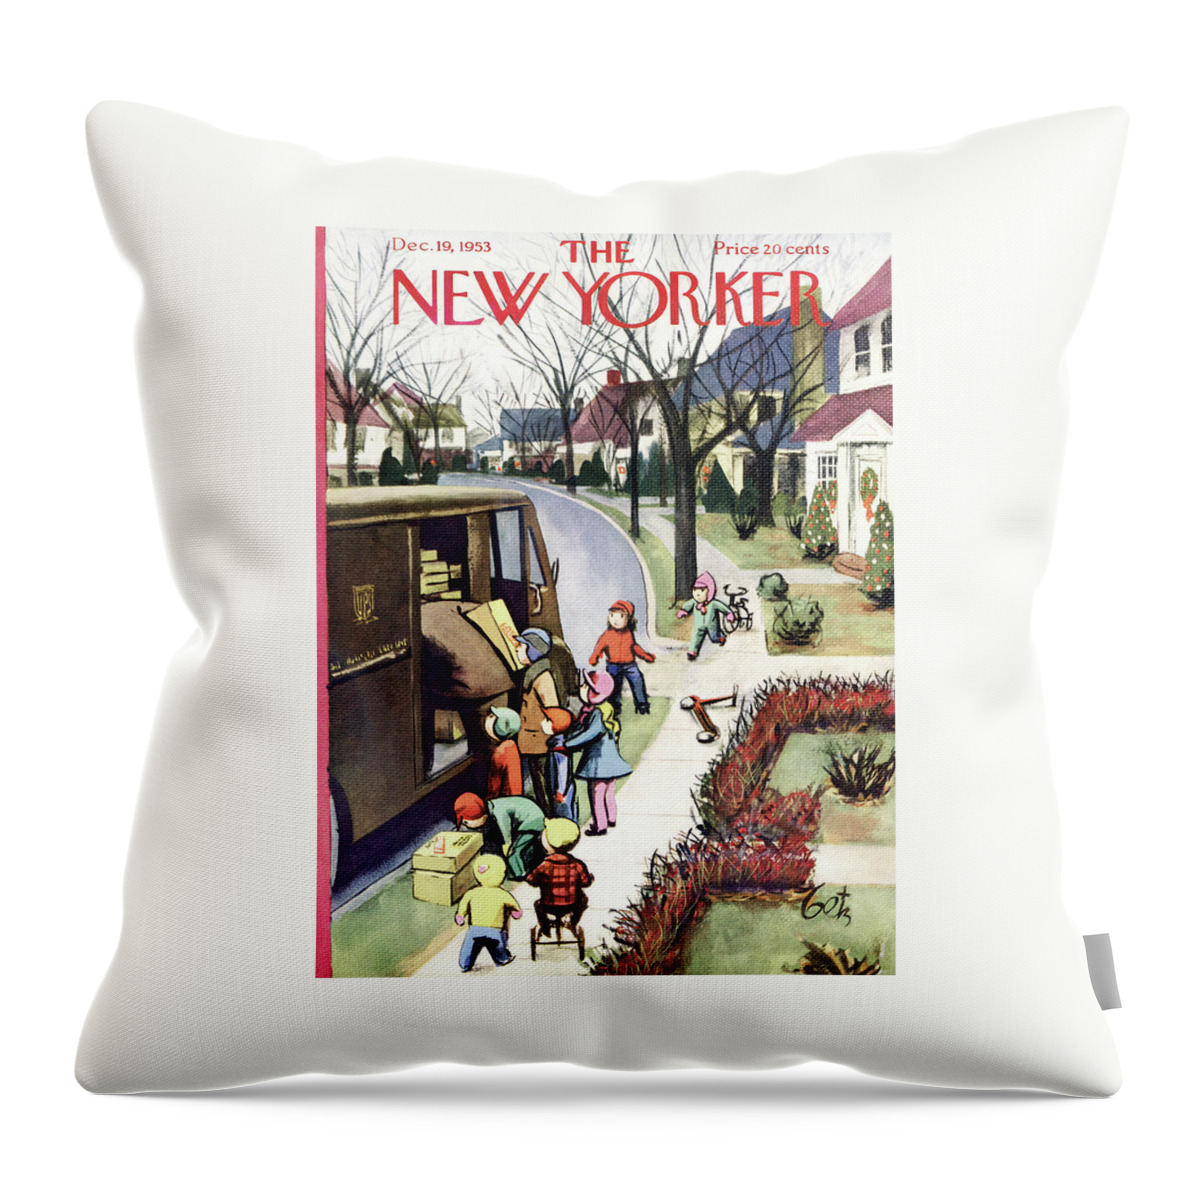 New Yorker December 19, 1953 Throw Pillow